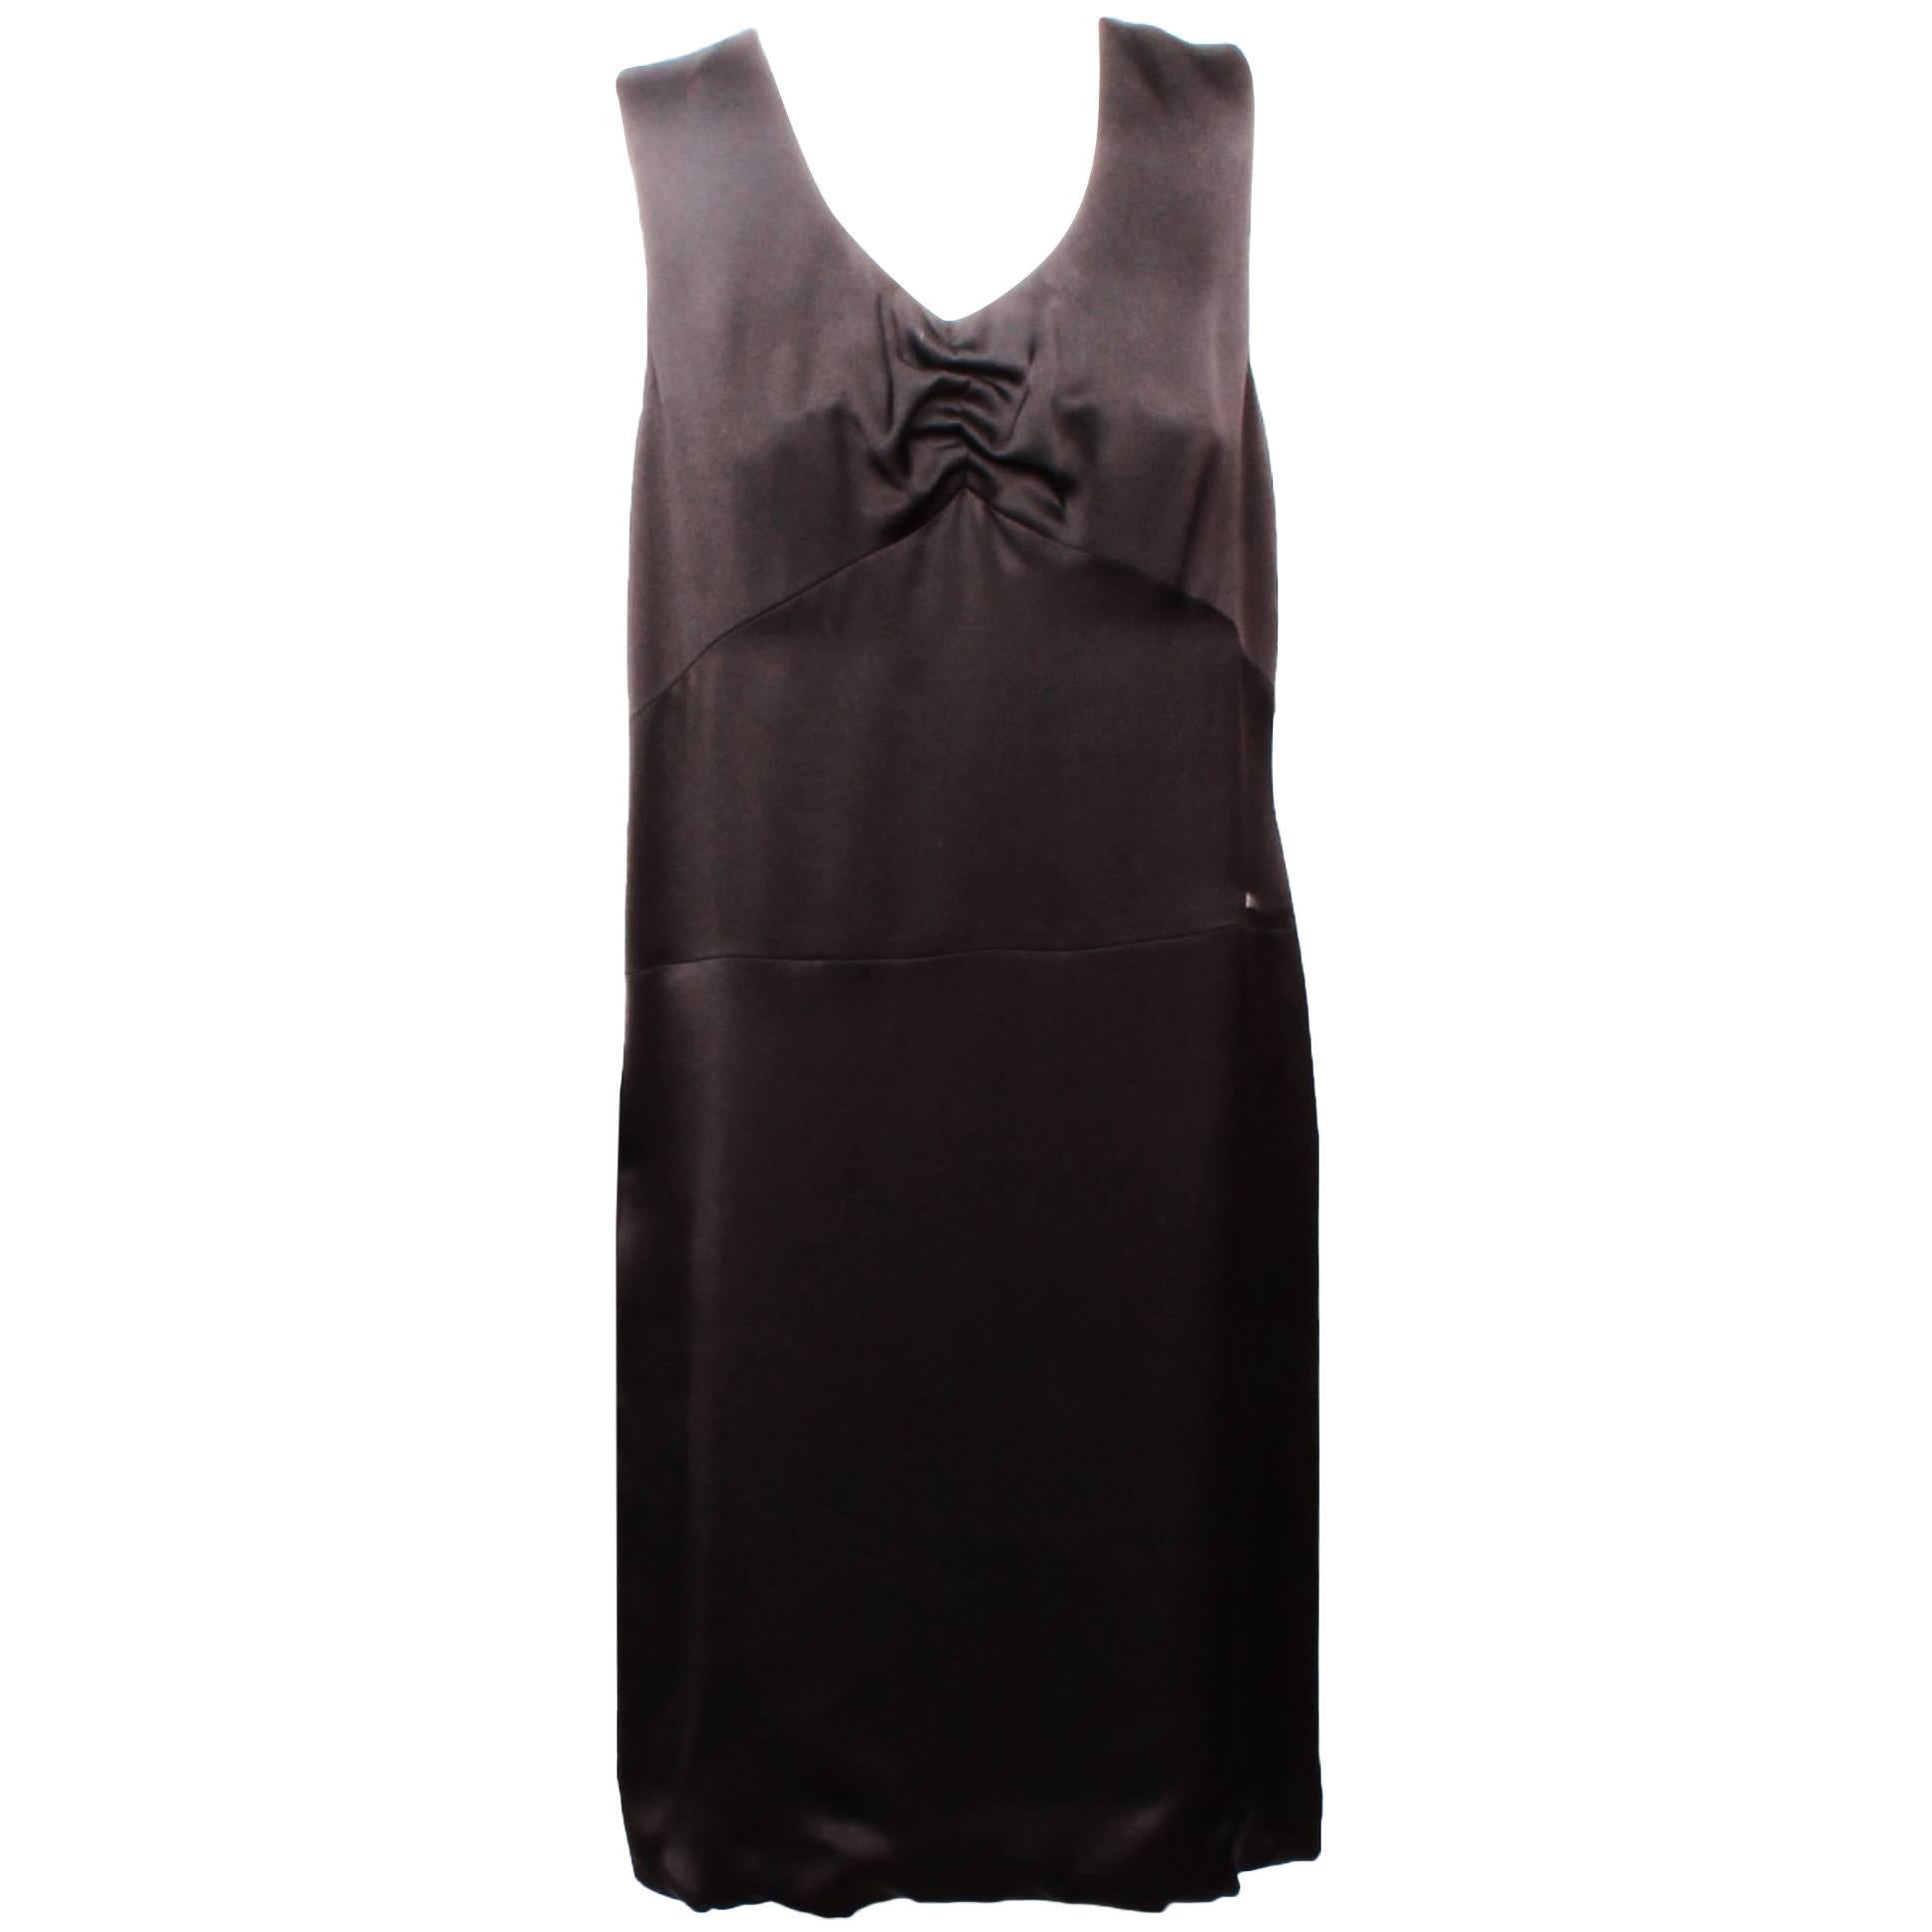 Chanel Vintage Black Dress - 158 For Sale on 1stDibs